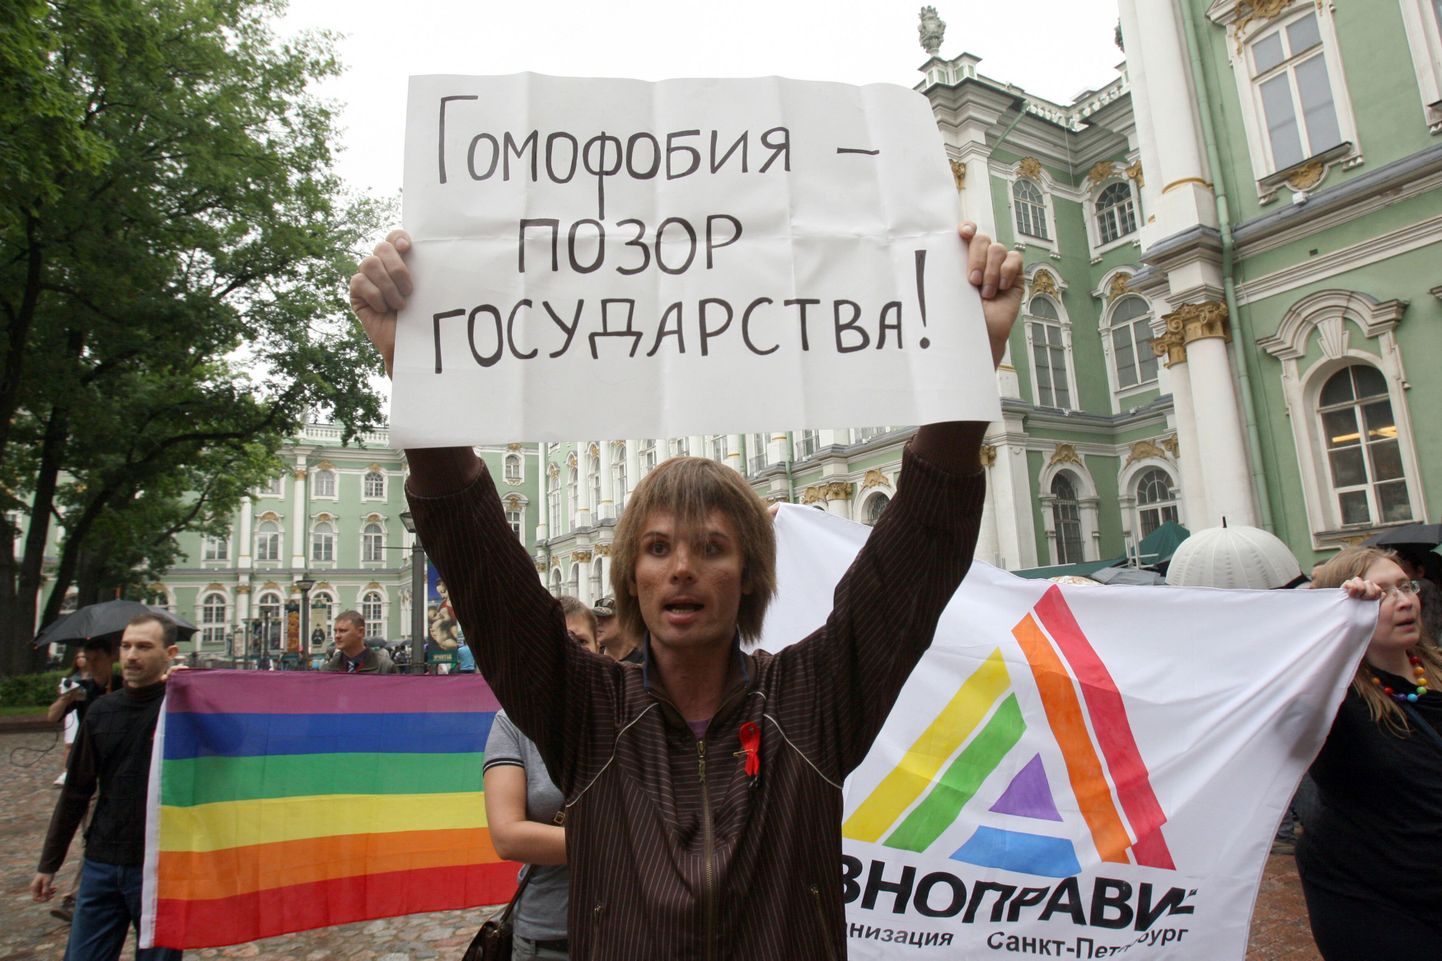 Vene aktivist hoiab tänasel meeleavaldusel Peterburis üleval loosungit kirjaga "Homofoobia - riigi häbiplekk".